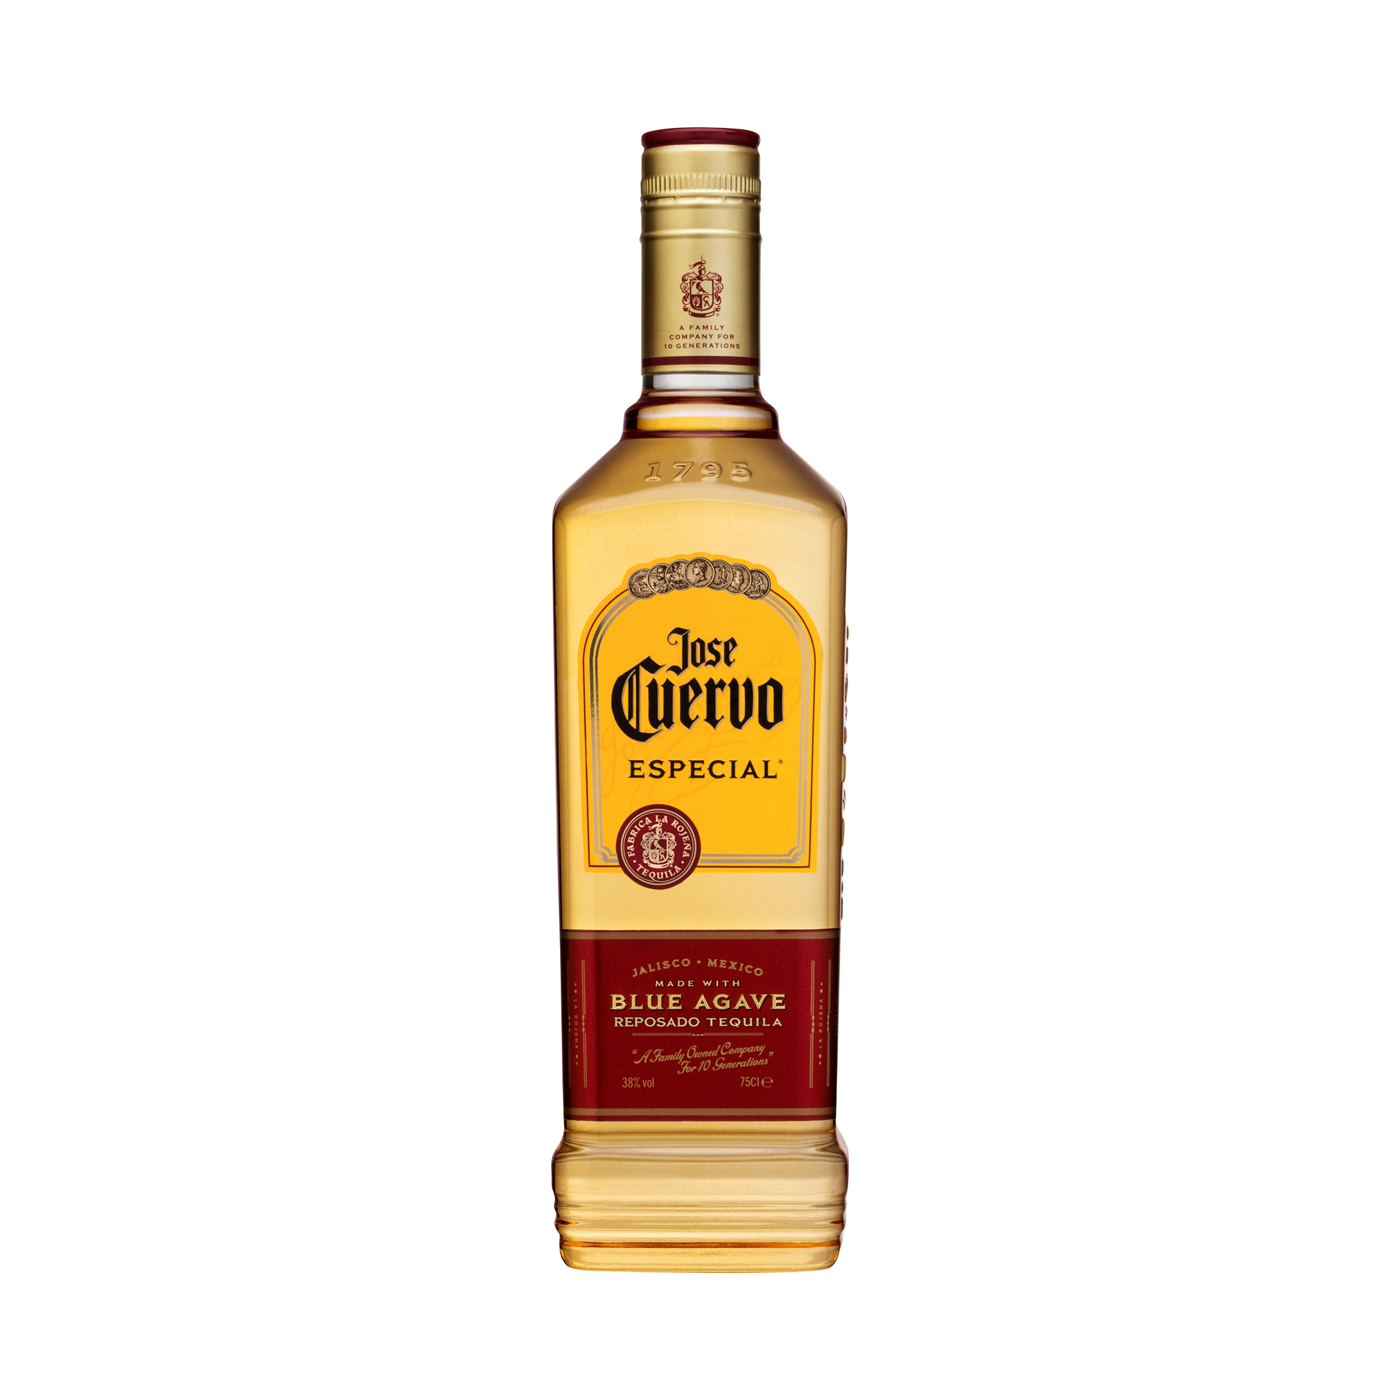 Jose Cuervo Tequila Especial Reposado Gold